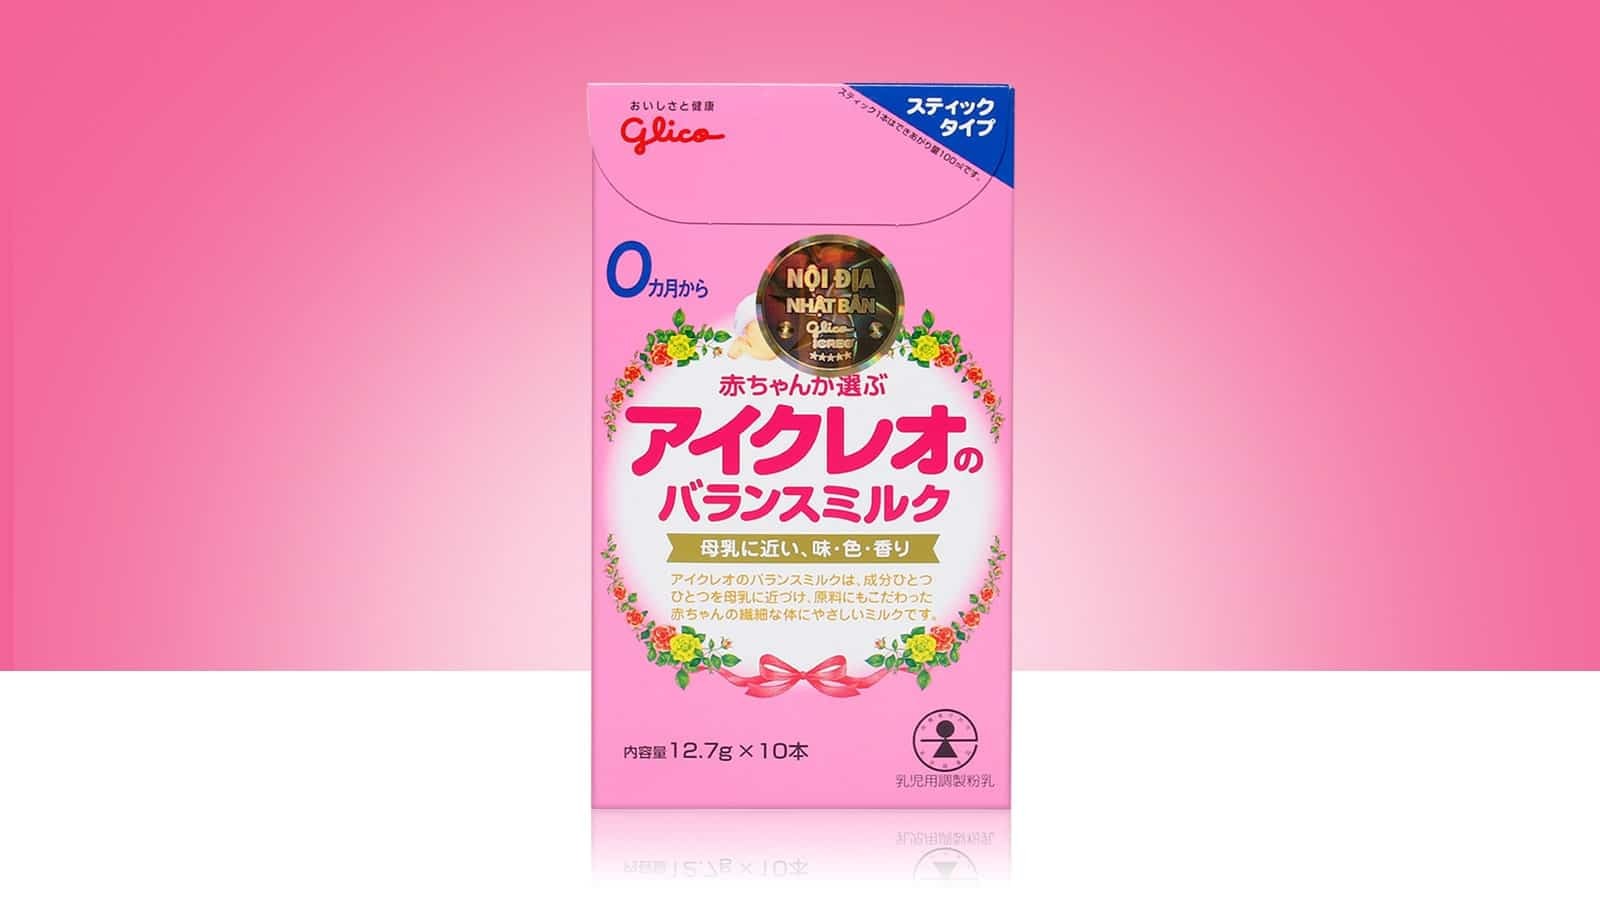 Sữa Glico Icreo số 0 Nhật Bản 10 gói (Cho bé 0 - 12 tháng)